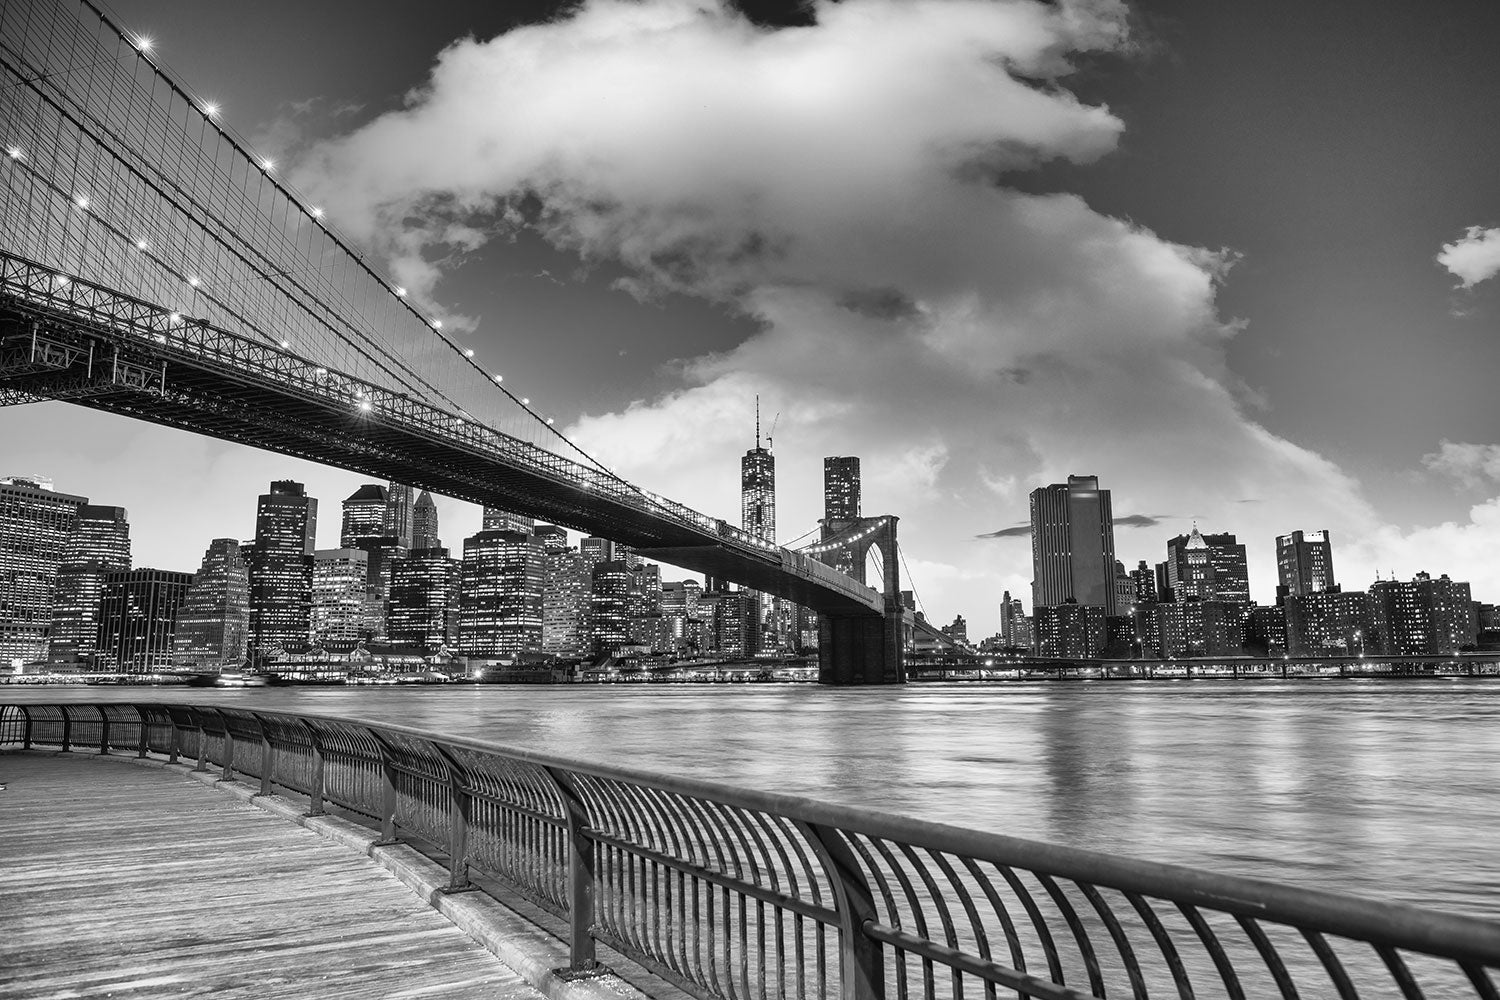 Fotomurale Fotografia in bianco e nero della skyline del ponte di Brooklin a NYC